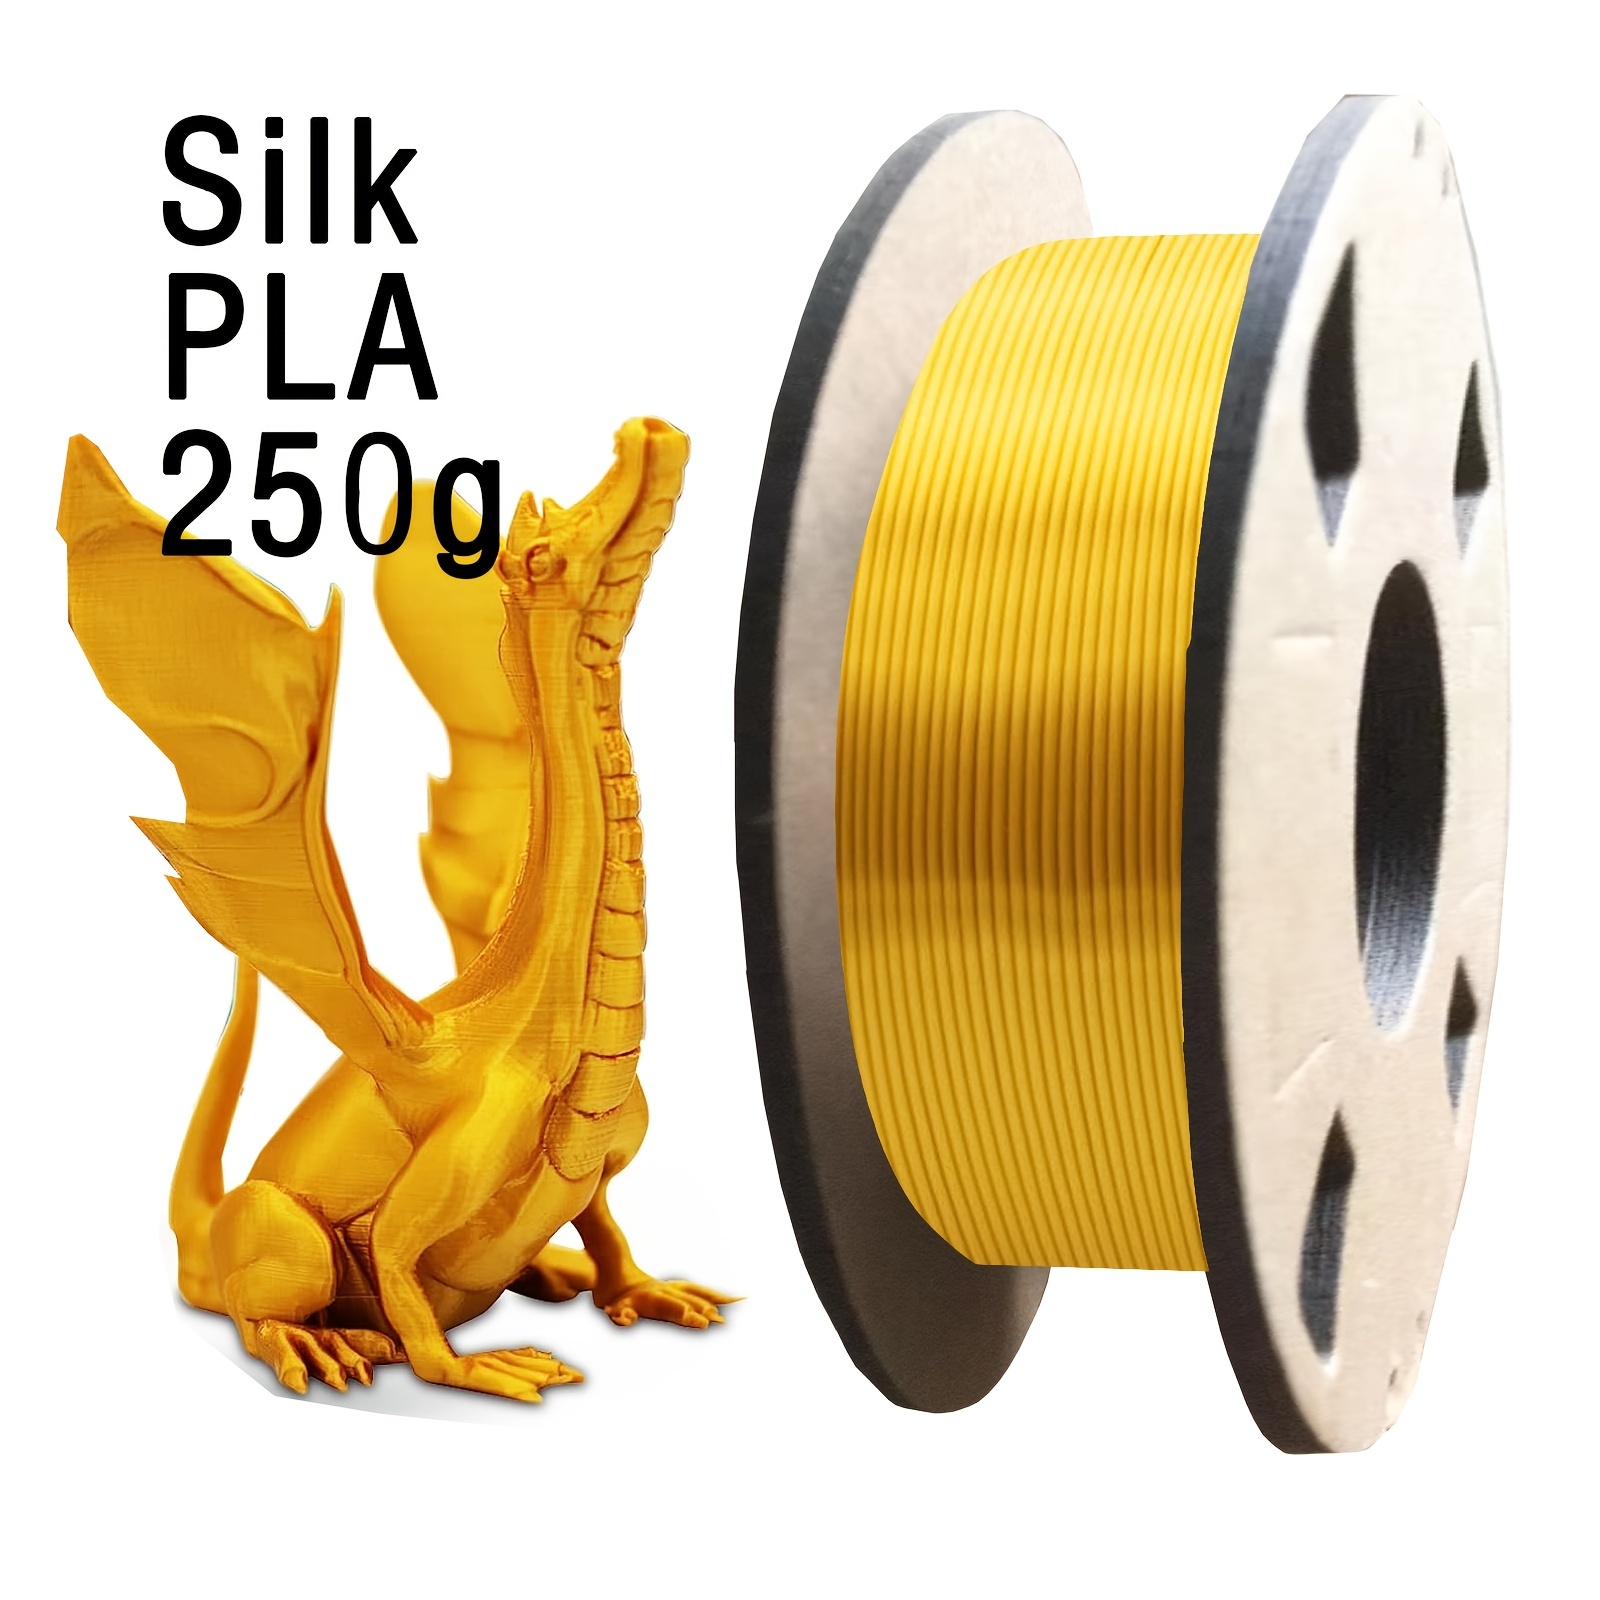 Filament PLA tricolore ERYONE en soie 1,75 mm, filament pour